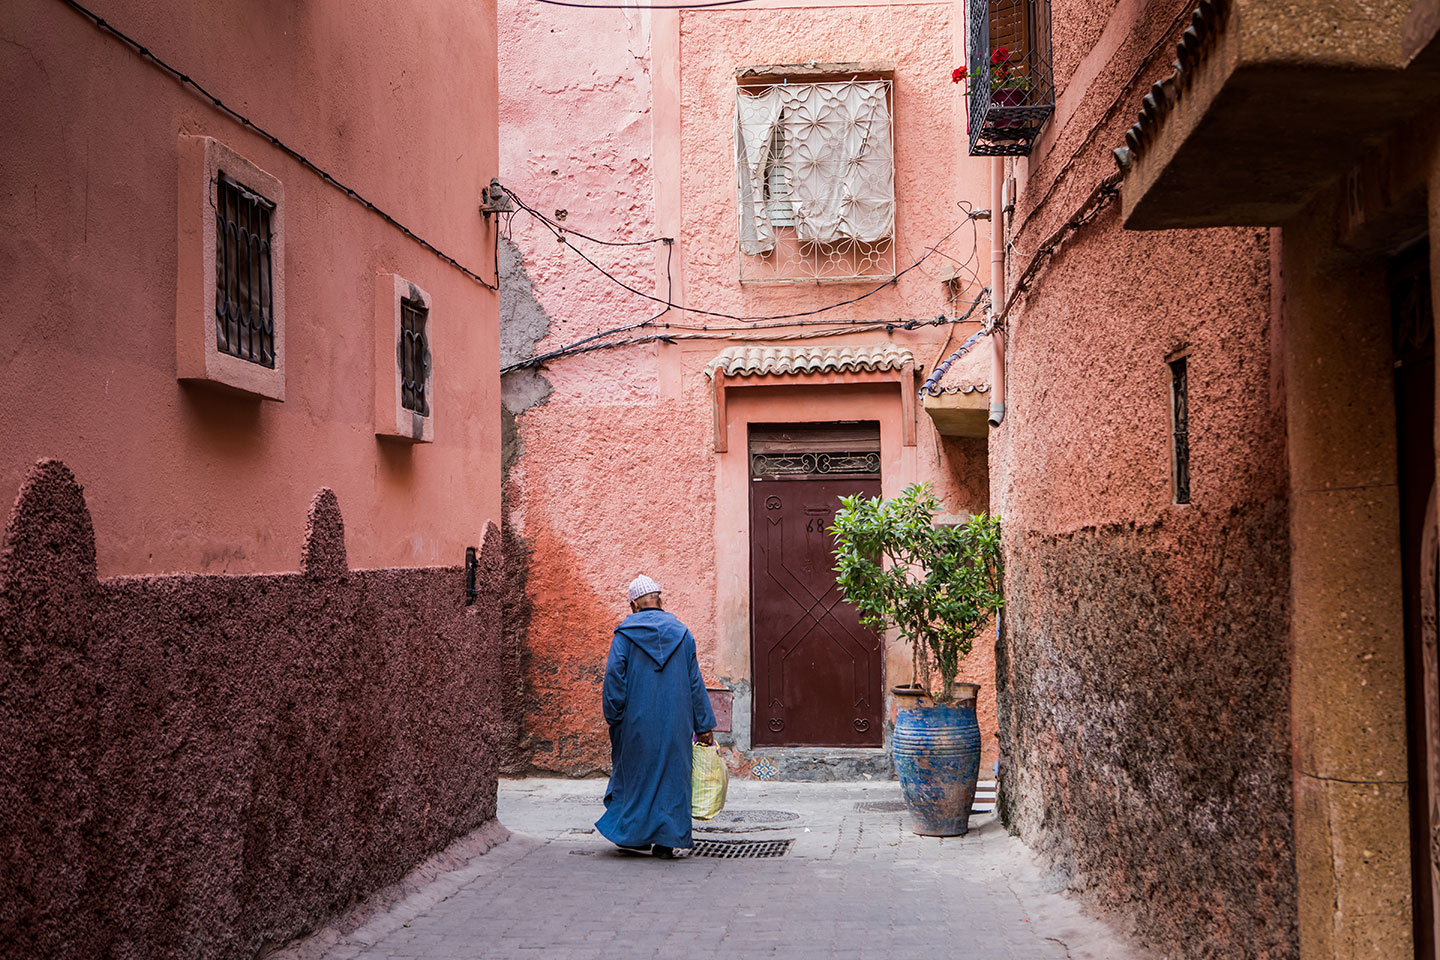 The medina of Marrakesh, Morocco